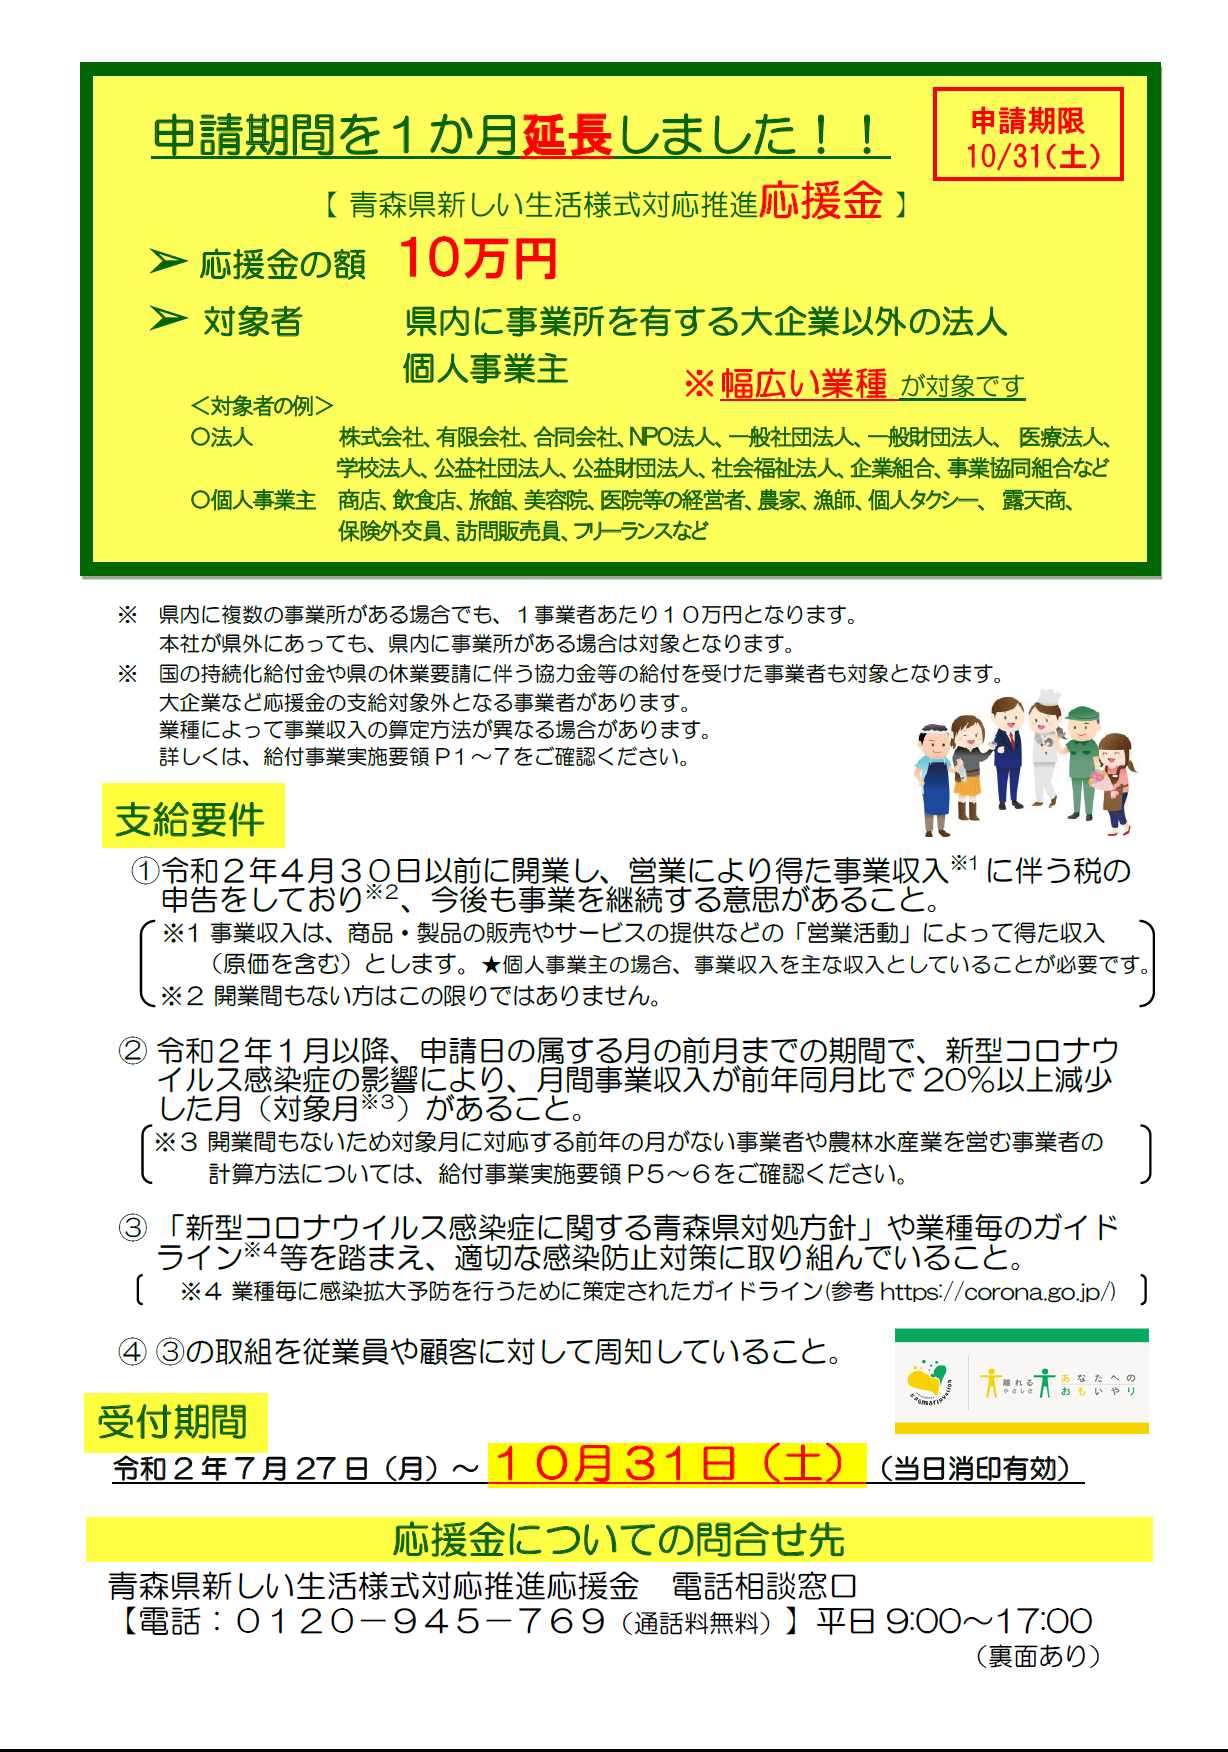 青森県新しい生活様式対応推進応援金 申請期限延長のお知らせ